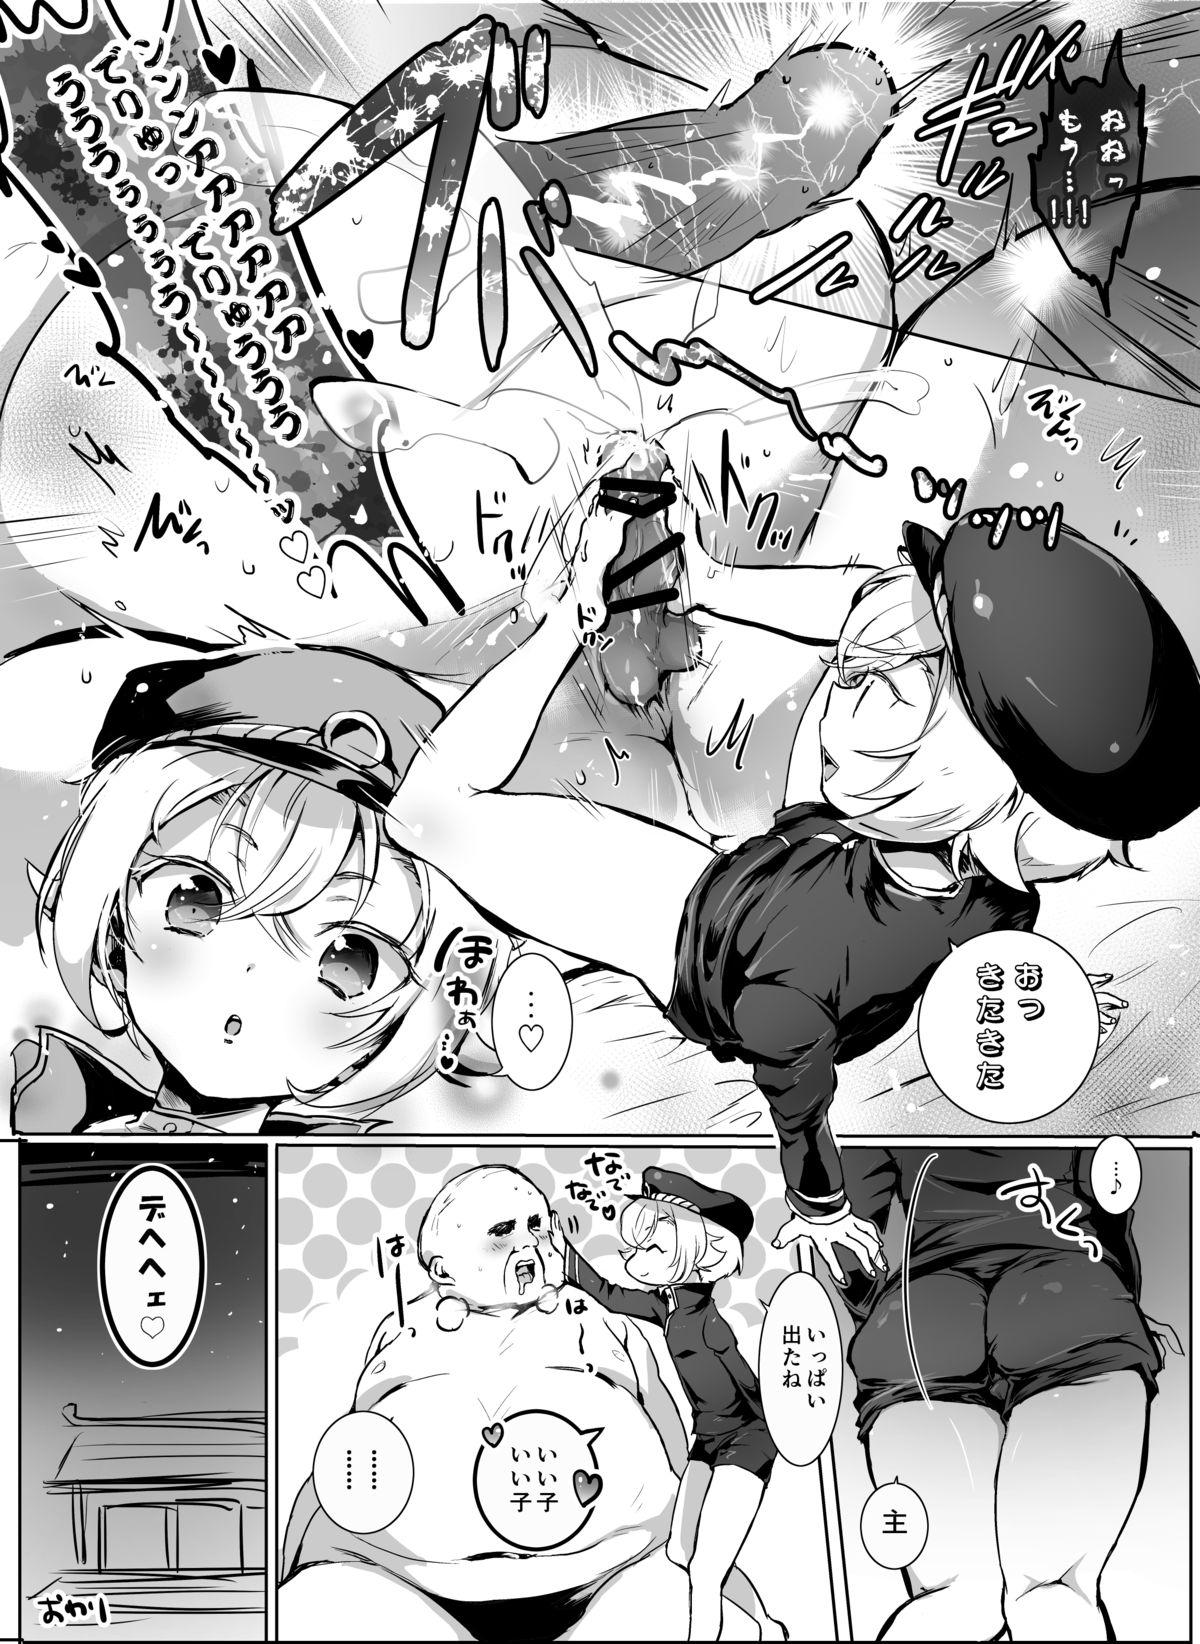 Asses Hotarumaru ga Mob Oji-Saniwa o Babubabu Sasete Ageru Manga - Touken ranbu Hot Naked Girl - Page 5